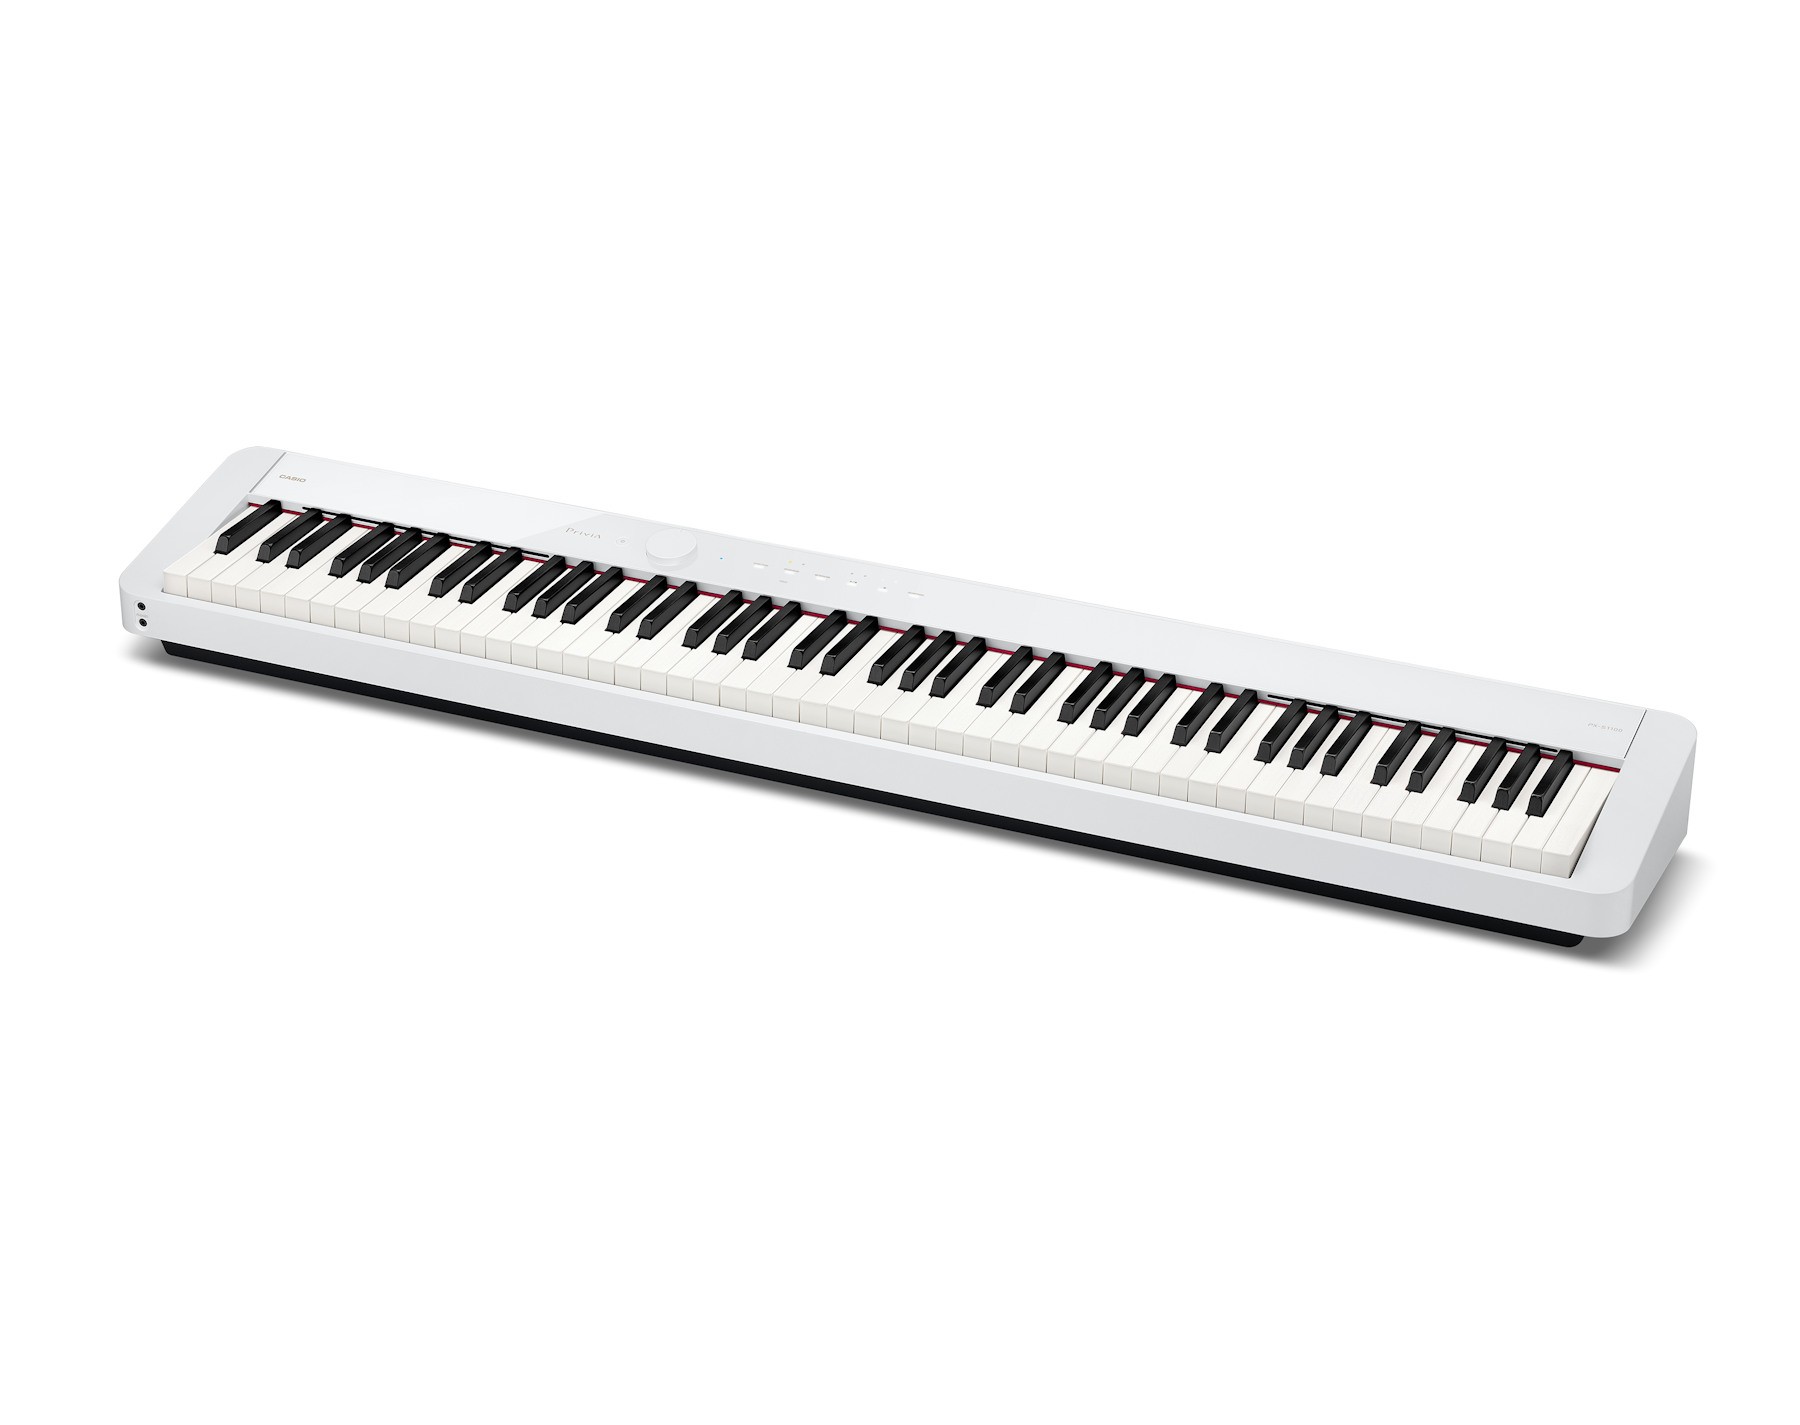 Casio Privia Digital Piano PX-S1100 - White | DuBaldo Music Center